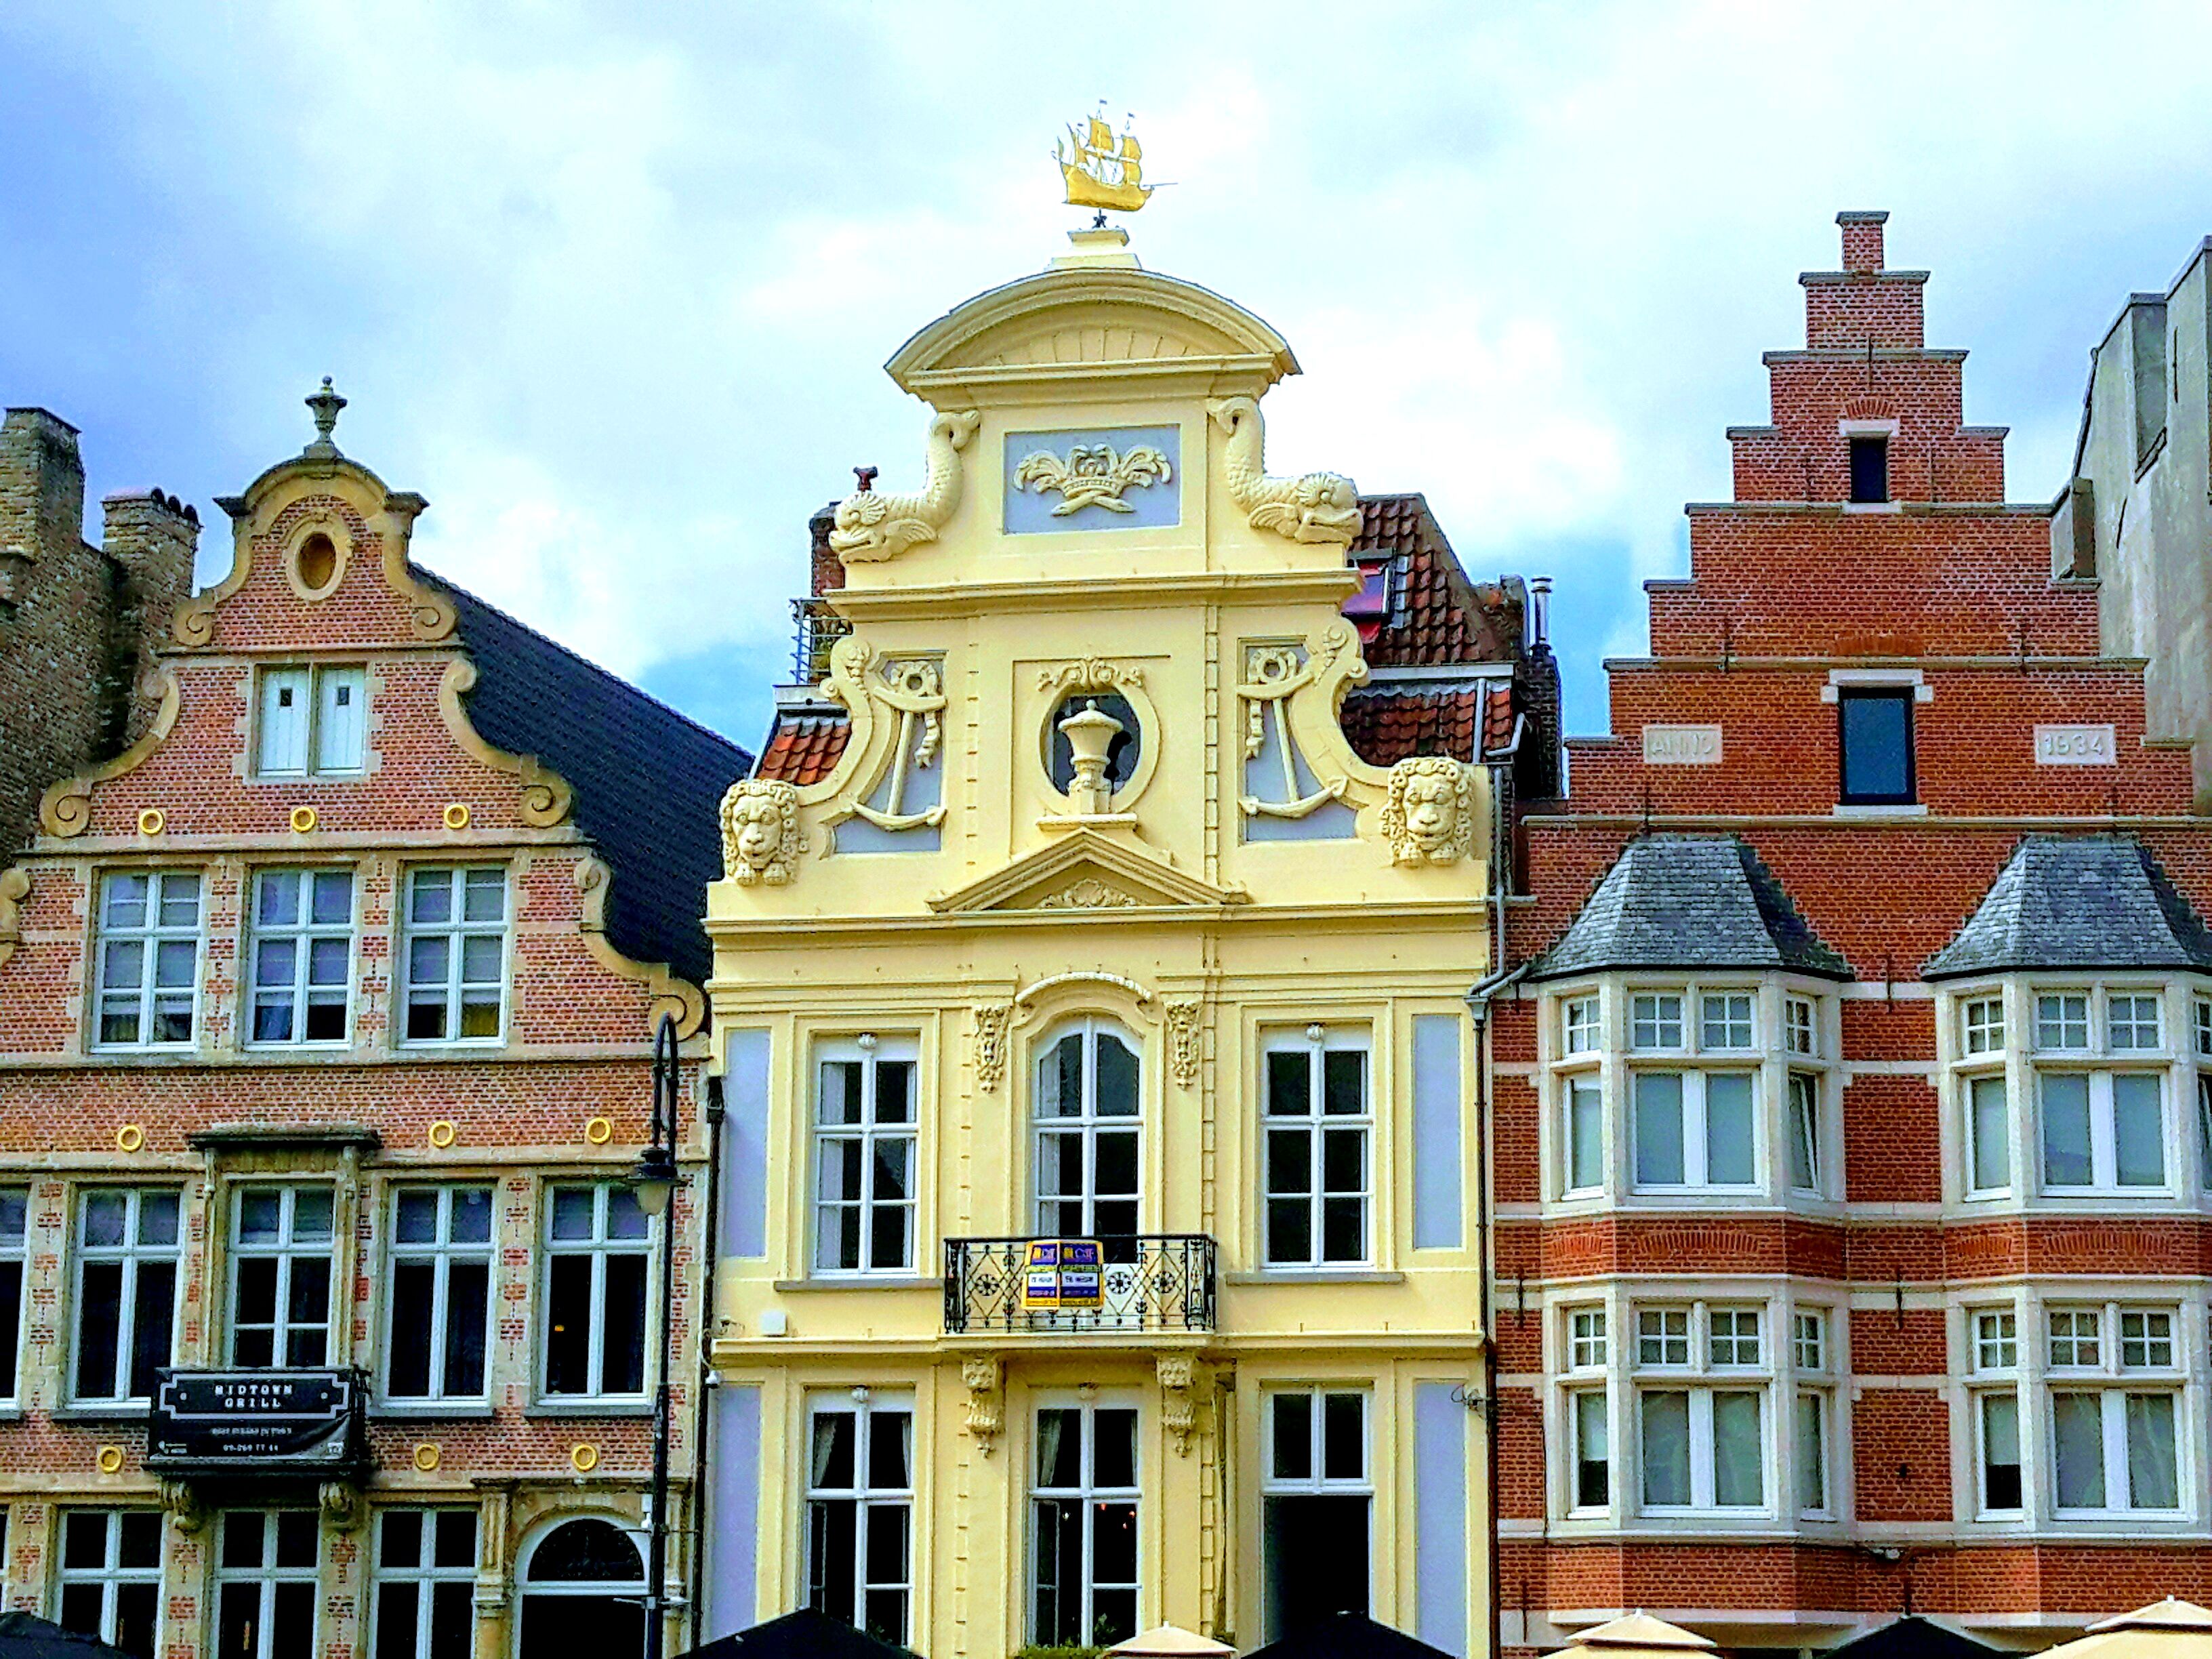 Magnifique architecture flamande à Gand